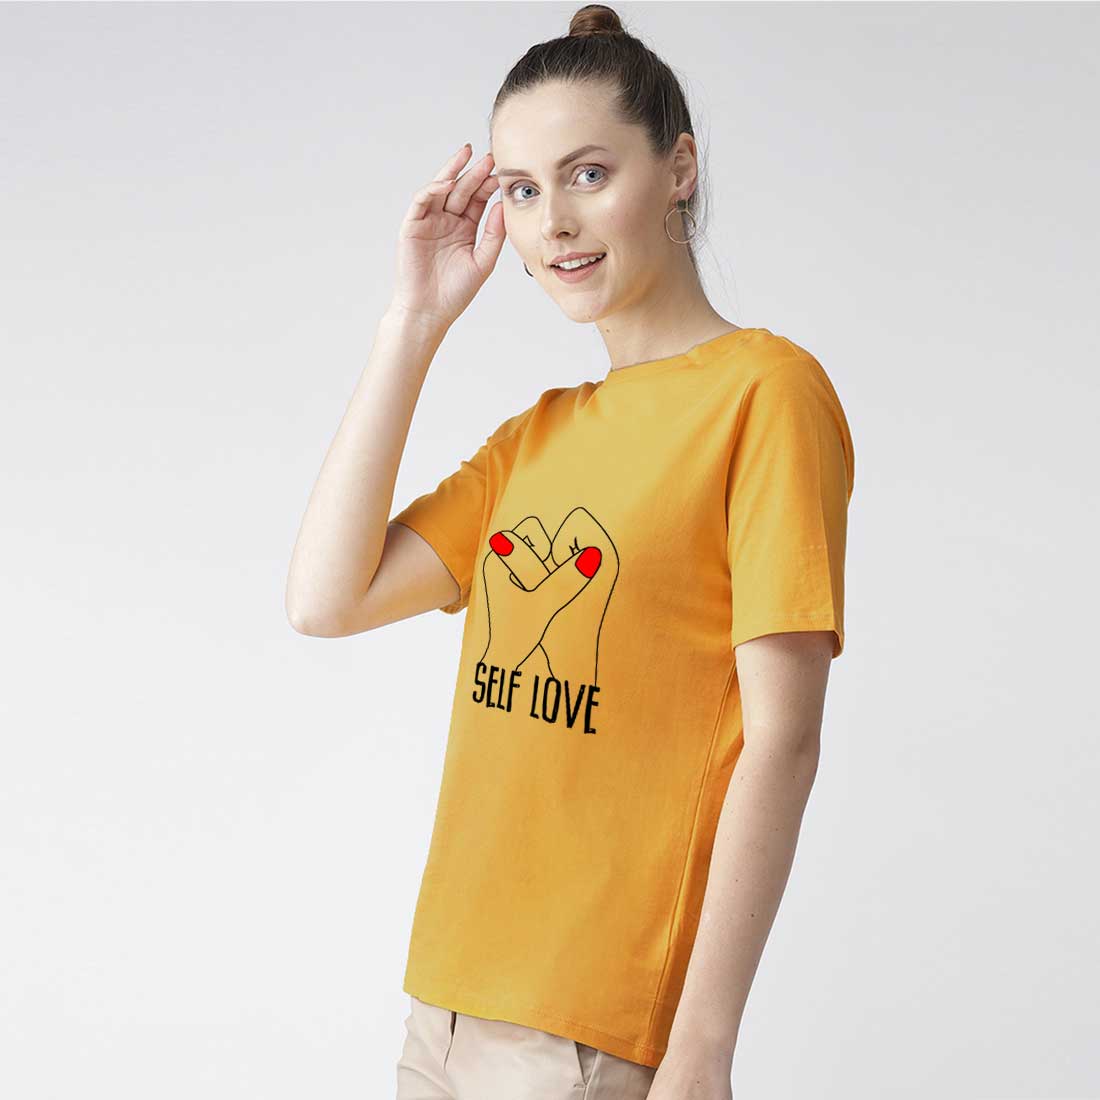 Self Love Mustard Women T-Shirt